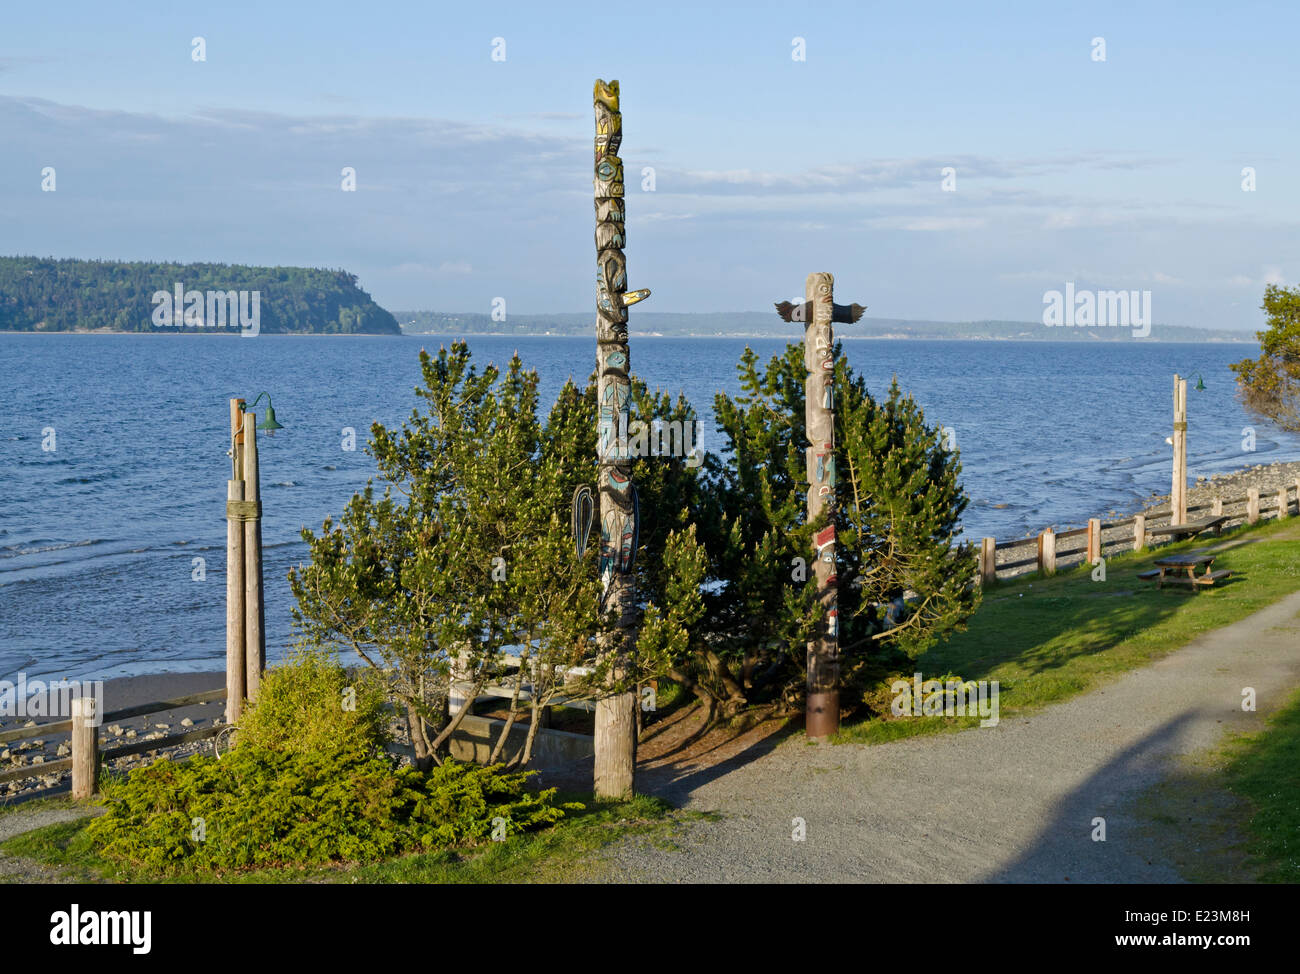 Erste Nationen oder Native American Totem Pole entlang das Wasser in Langley, Washington State, auf Whidbey Island. Stockfoto